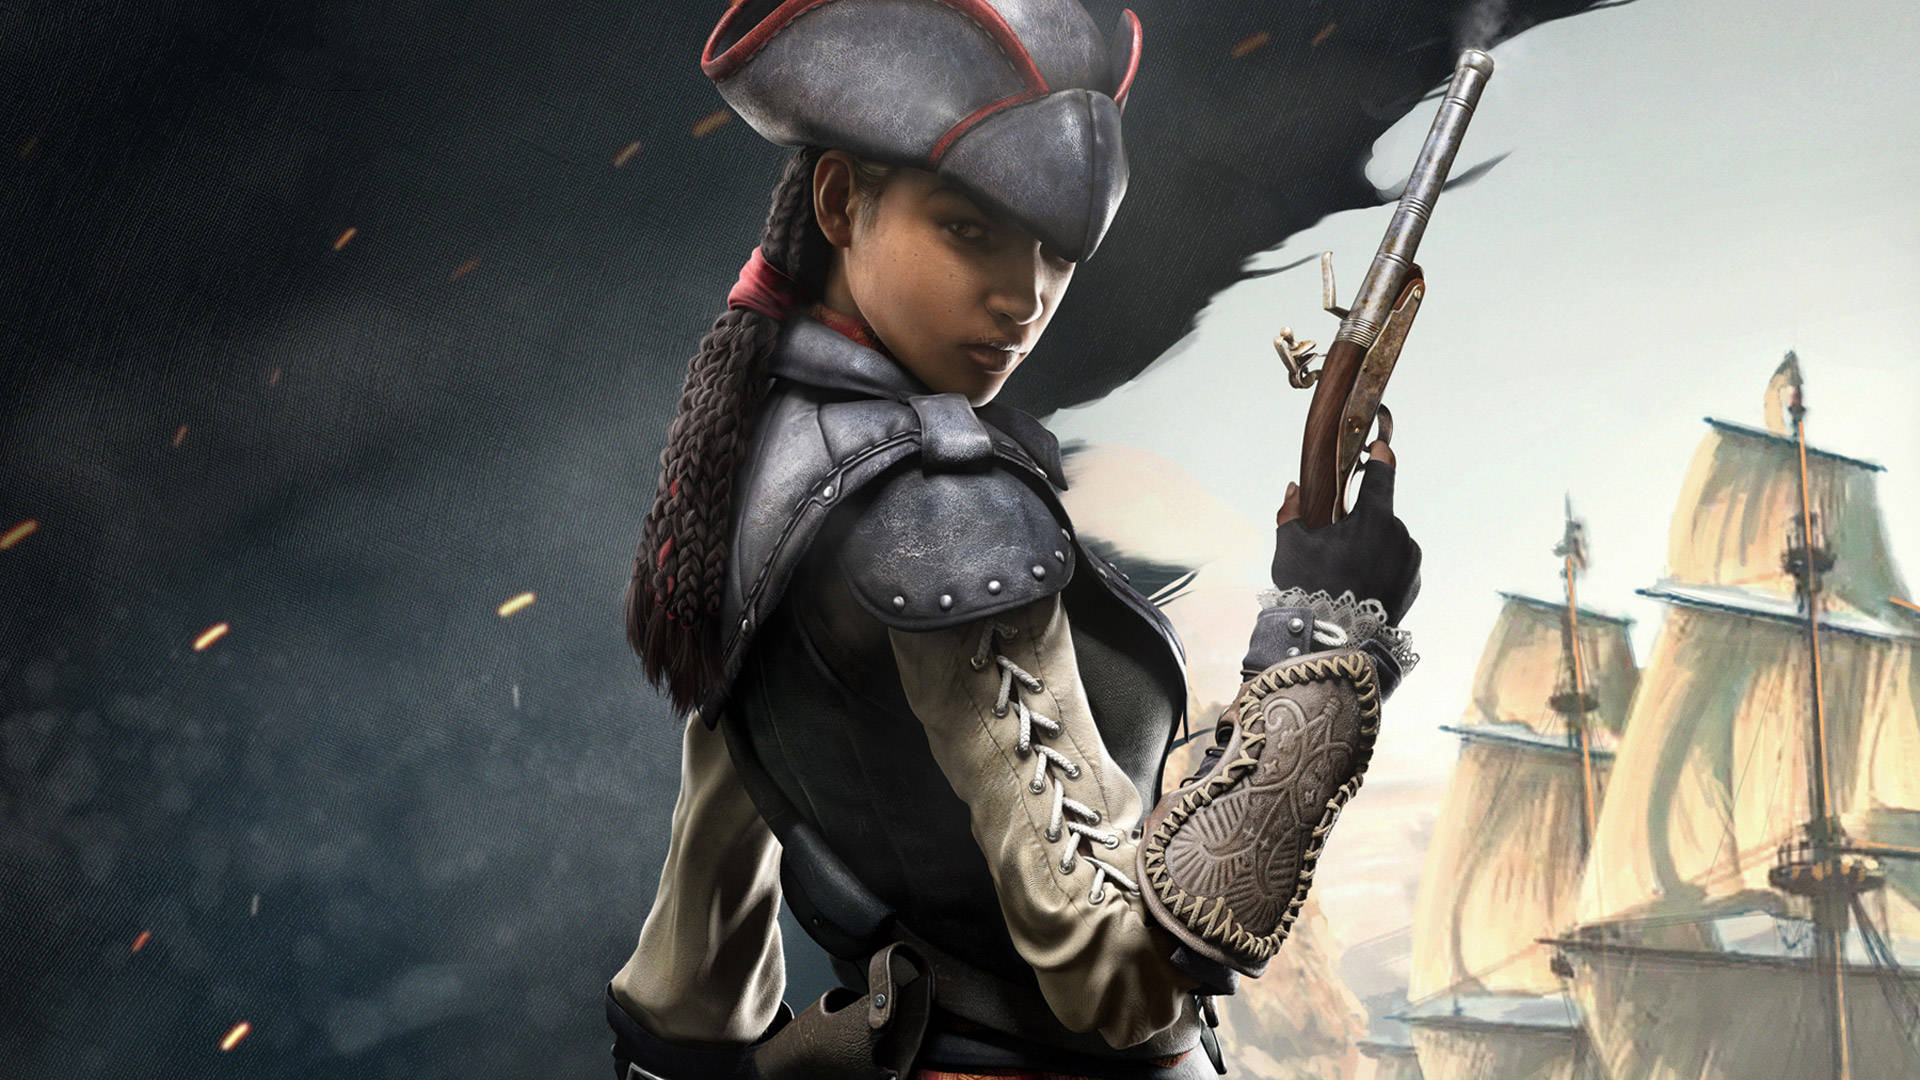 Assassin's Creed Black Flag - Aveline De Grandpre In Action